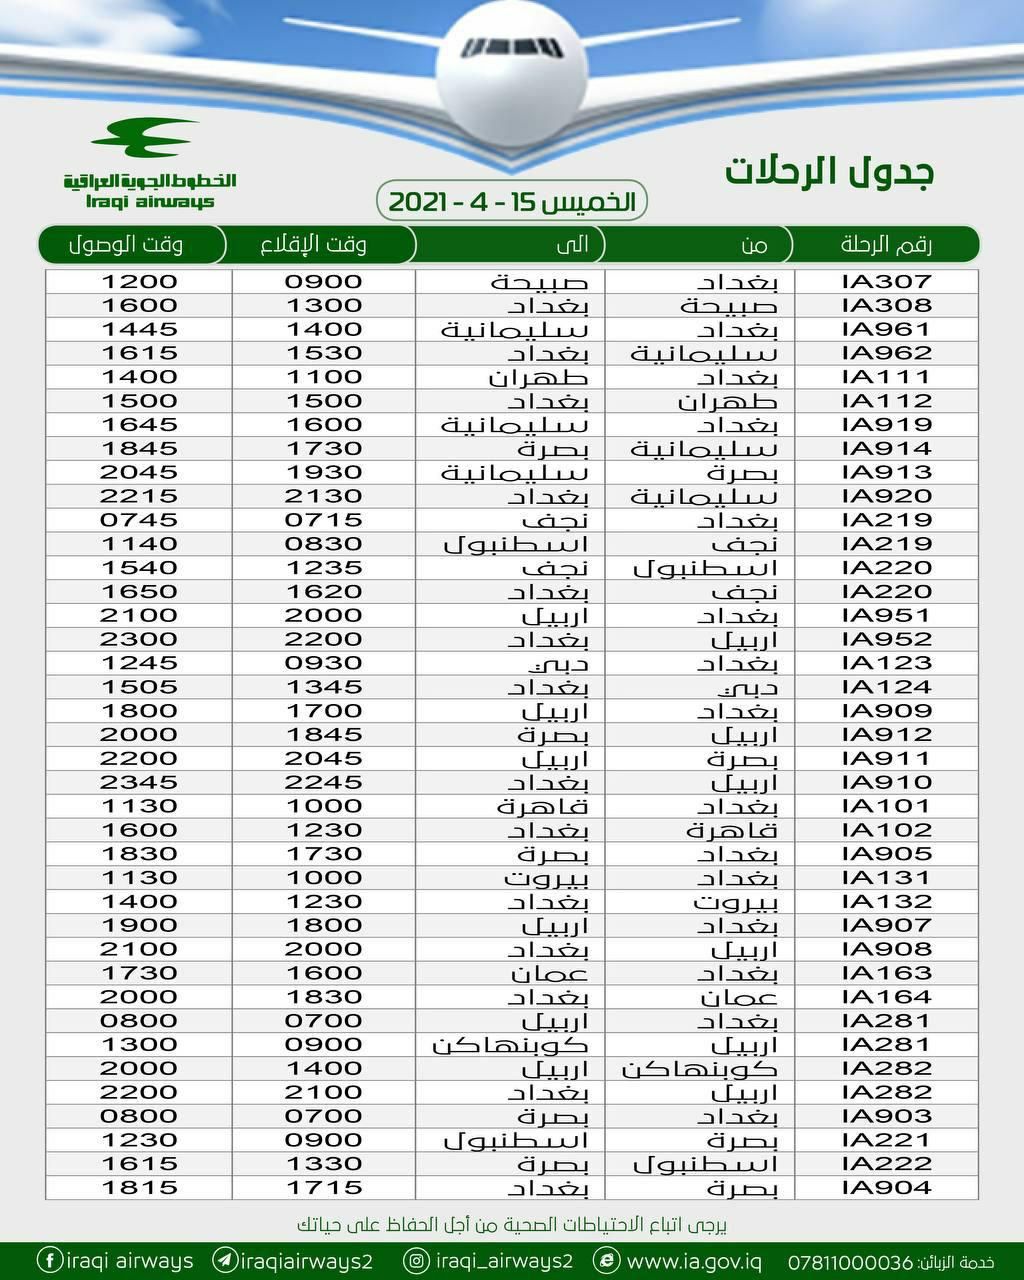 جدول الرحلات الجوية للبلاد للخطوط العراقية ليوم غد الخميس